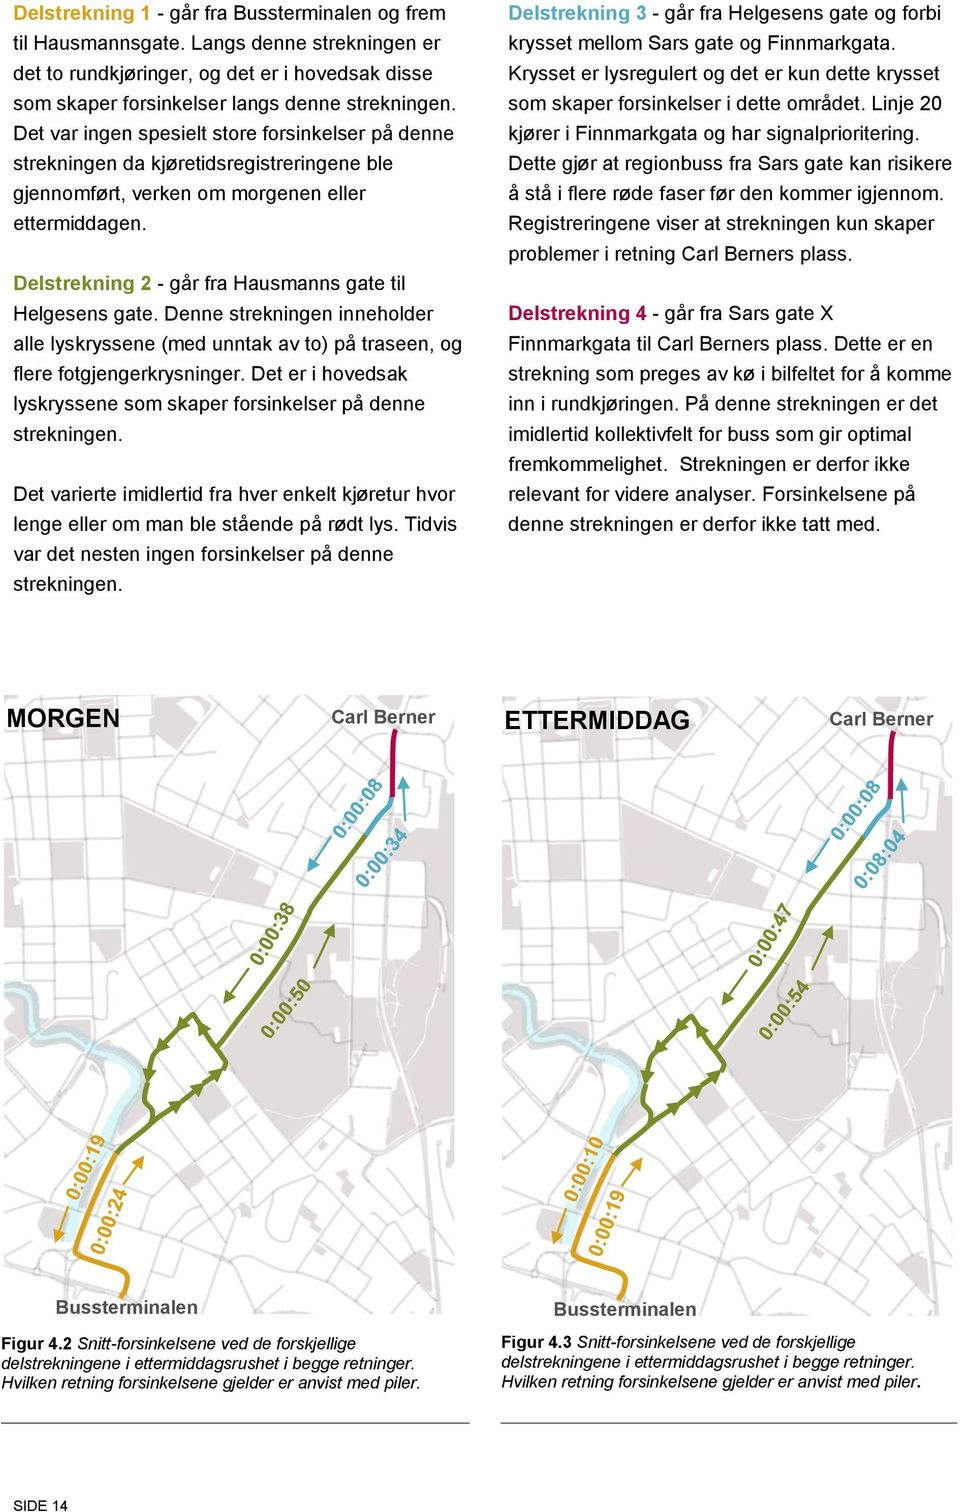 Delstrekning 2 - går fra Hausmanns gate til Helgesens gate. Denne strekningen inneholder alle lyskryssene (med unntak av to) på traseen, og flere fotgjengerkrysninger.